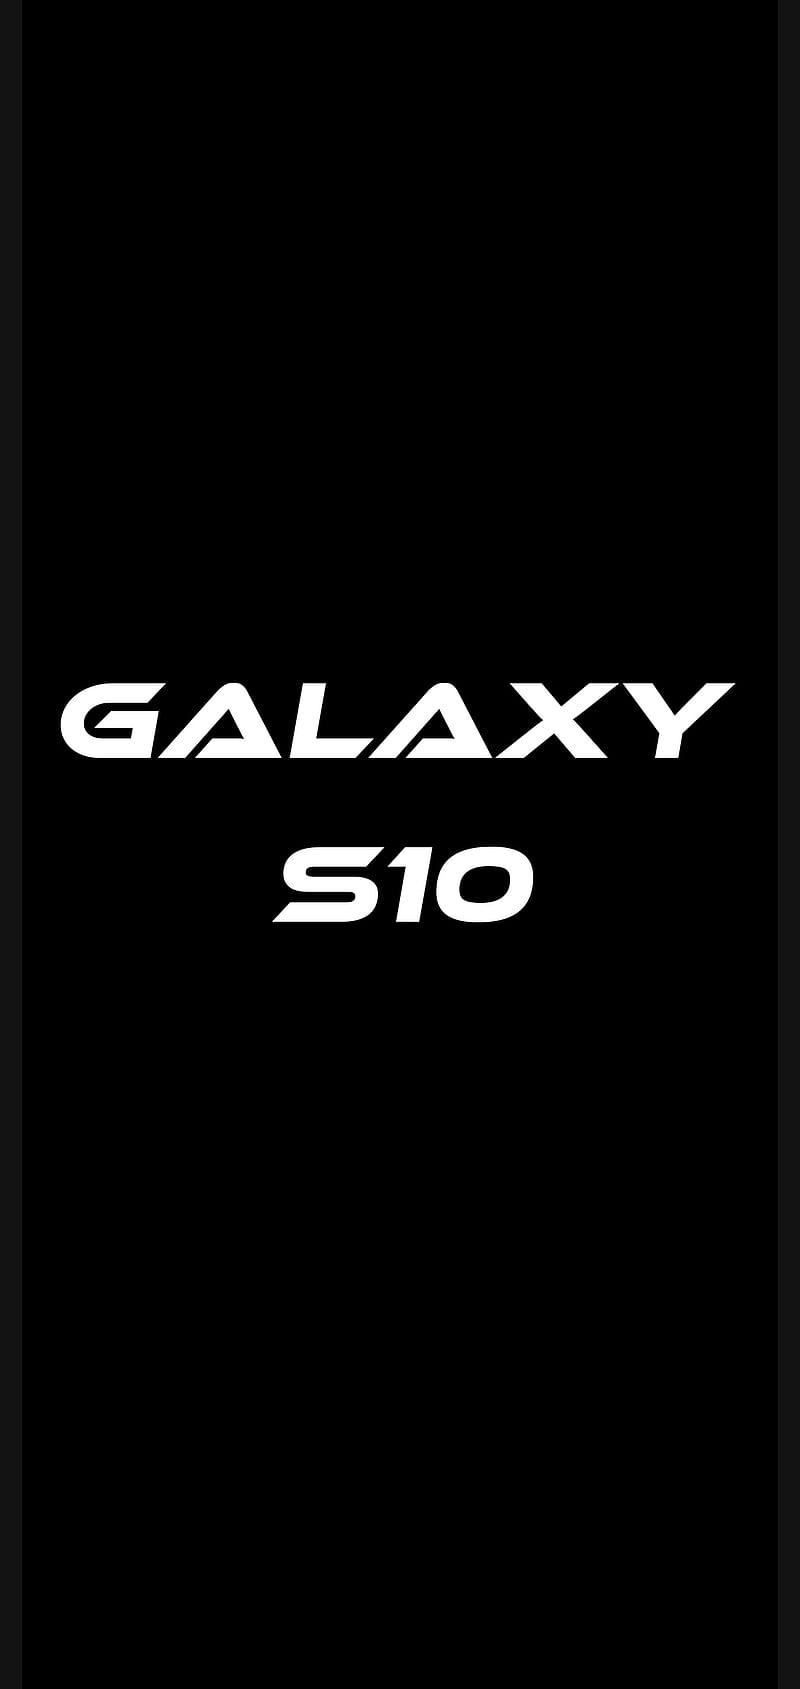 Với Samsung Galaxy S10, bạn sẽ được sở hữu một chiếc điện thoại thông minh tuyệt vời với hiệu suất cực cao và tính năng đa dạng. Từ camera siêu khủng đến màn hình Infinity-O đẳng cấp, Galaxy S10 sẽ không làm bạn thất vọng.